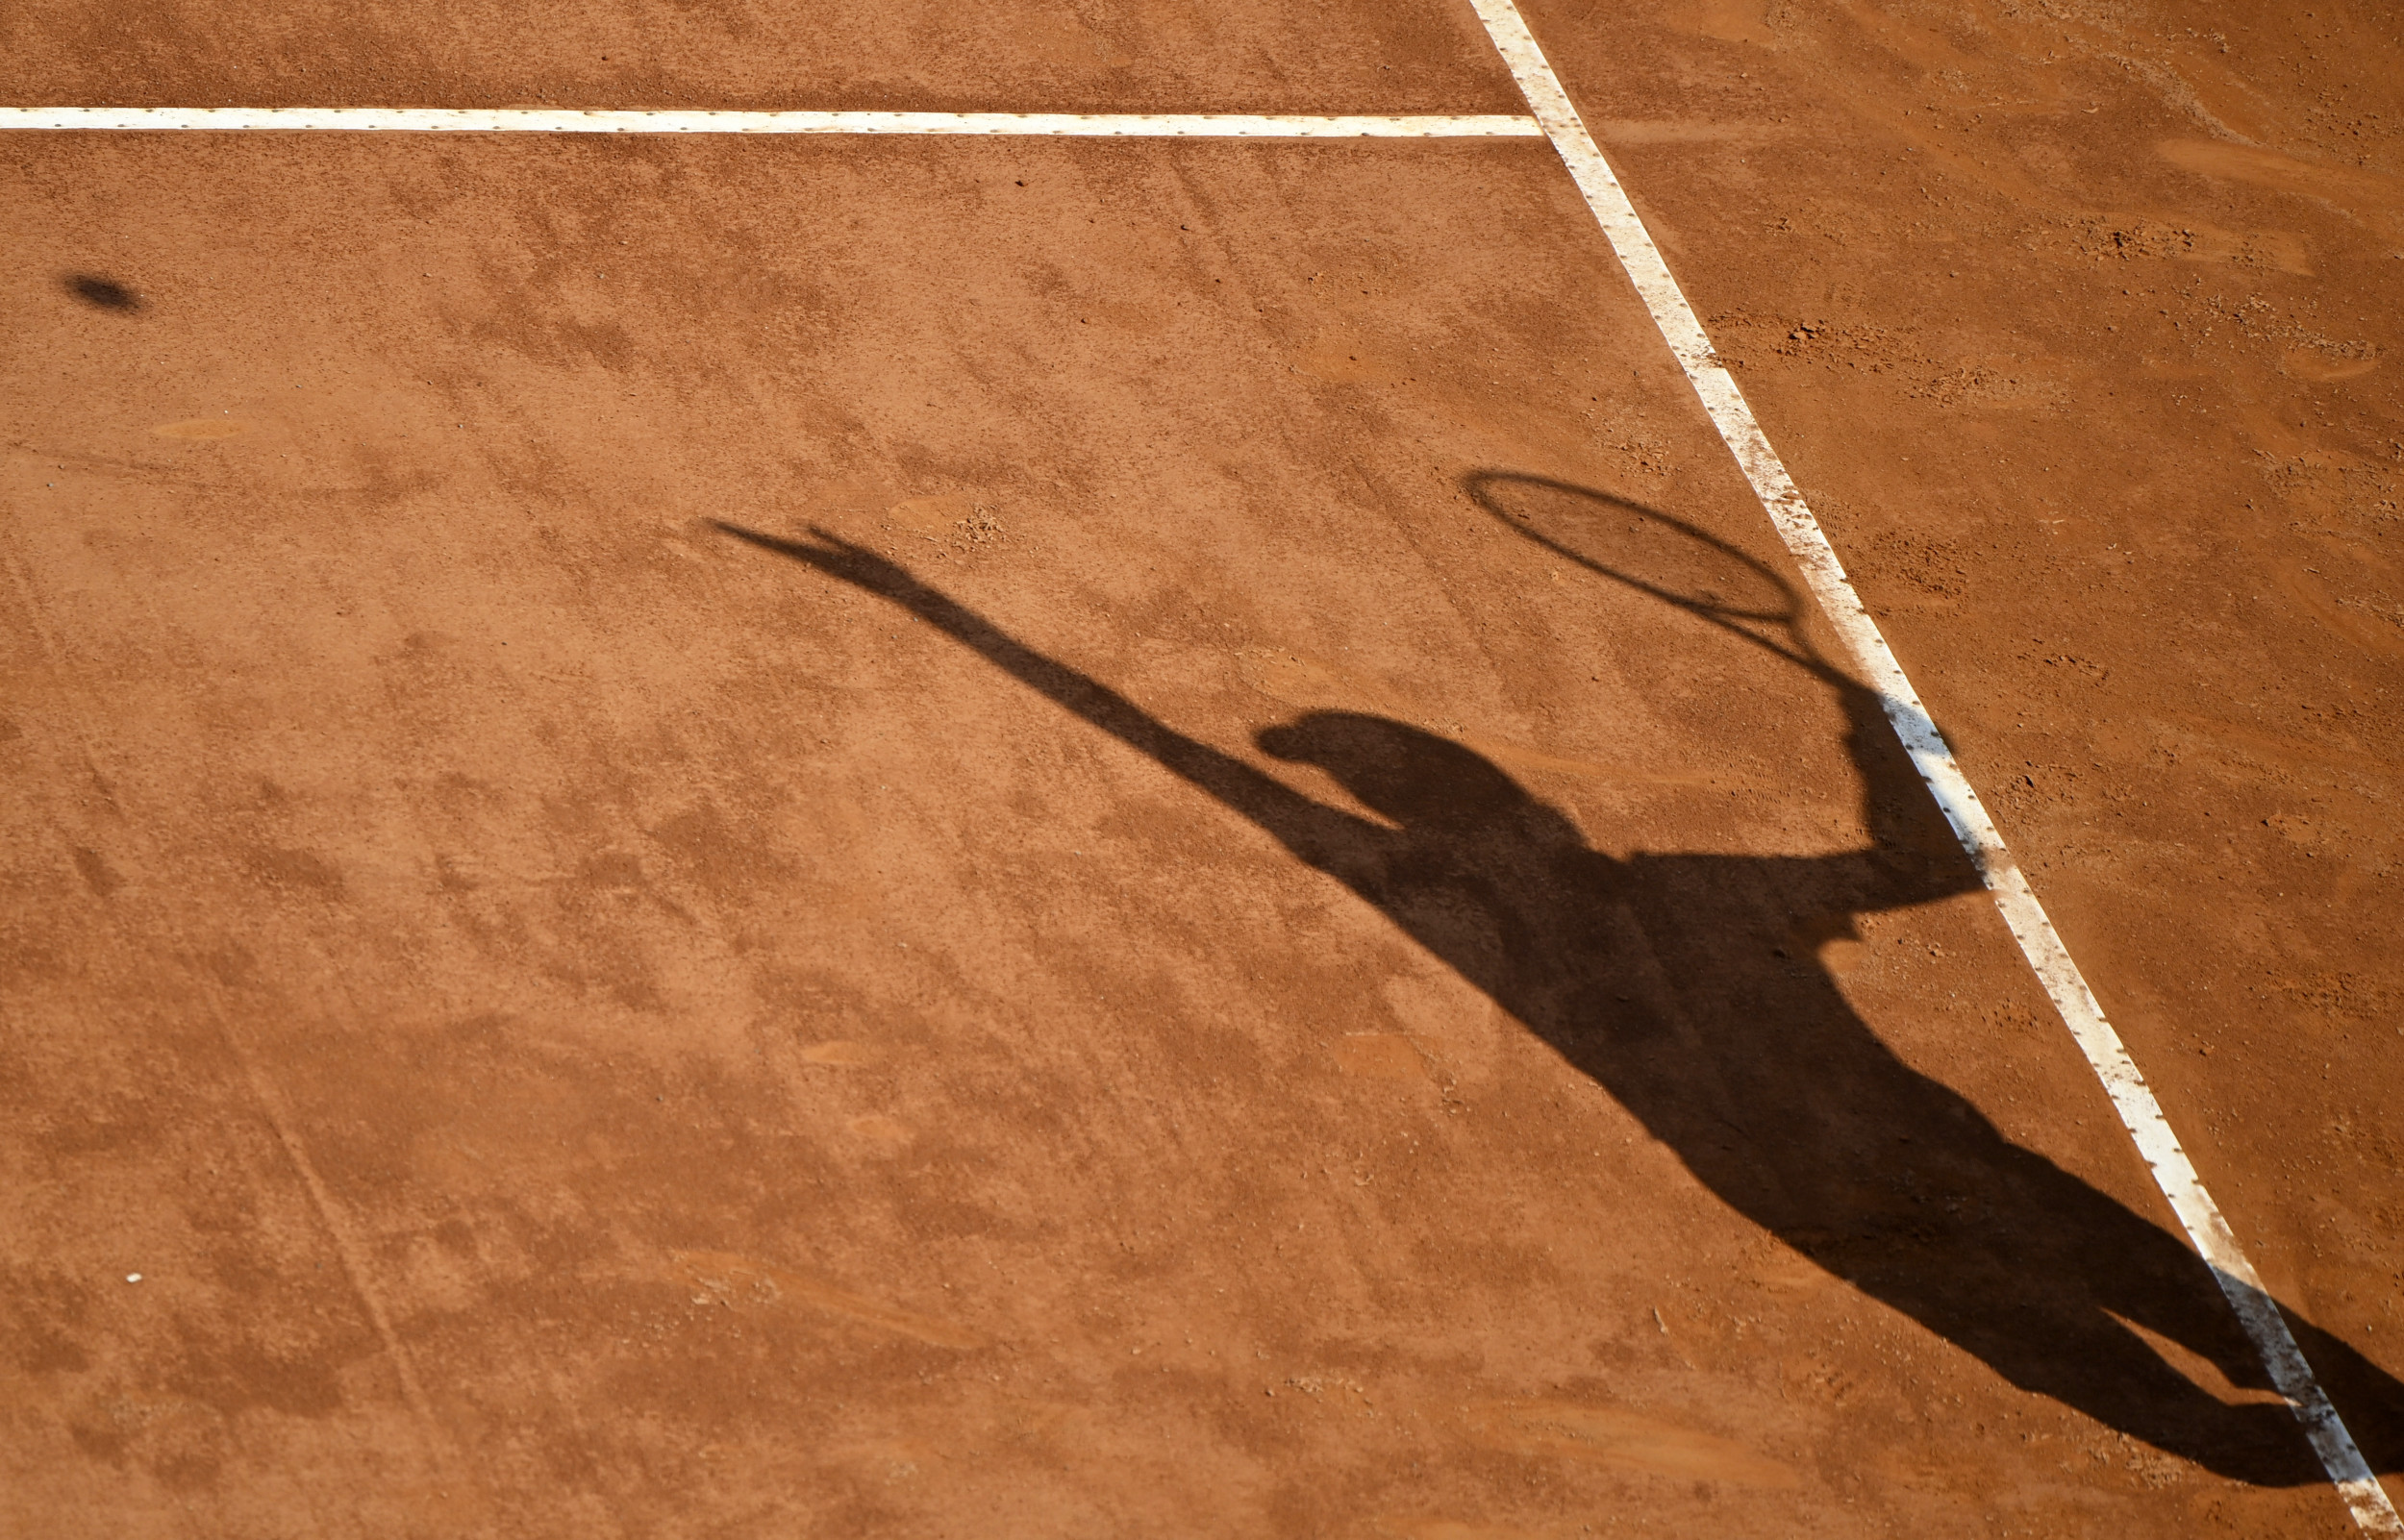 Членство России приостановлено Международной федерацией тенниса, что усугубляет спортивные проблемы